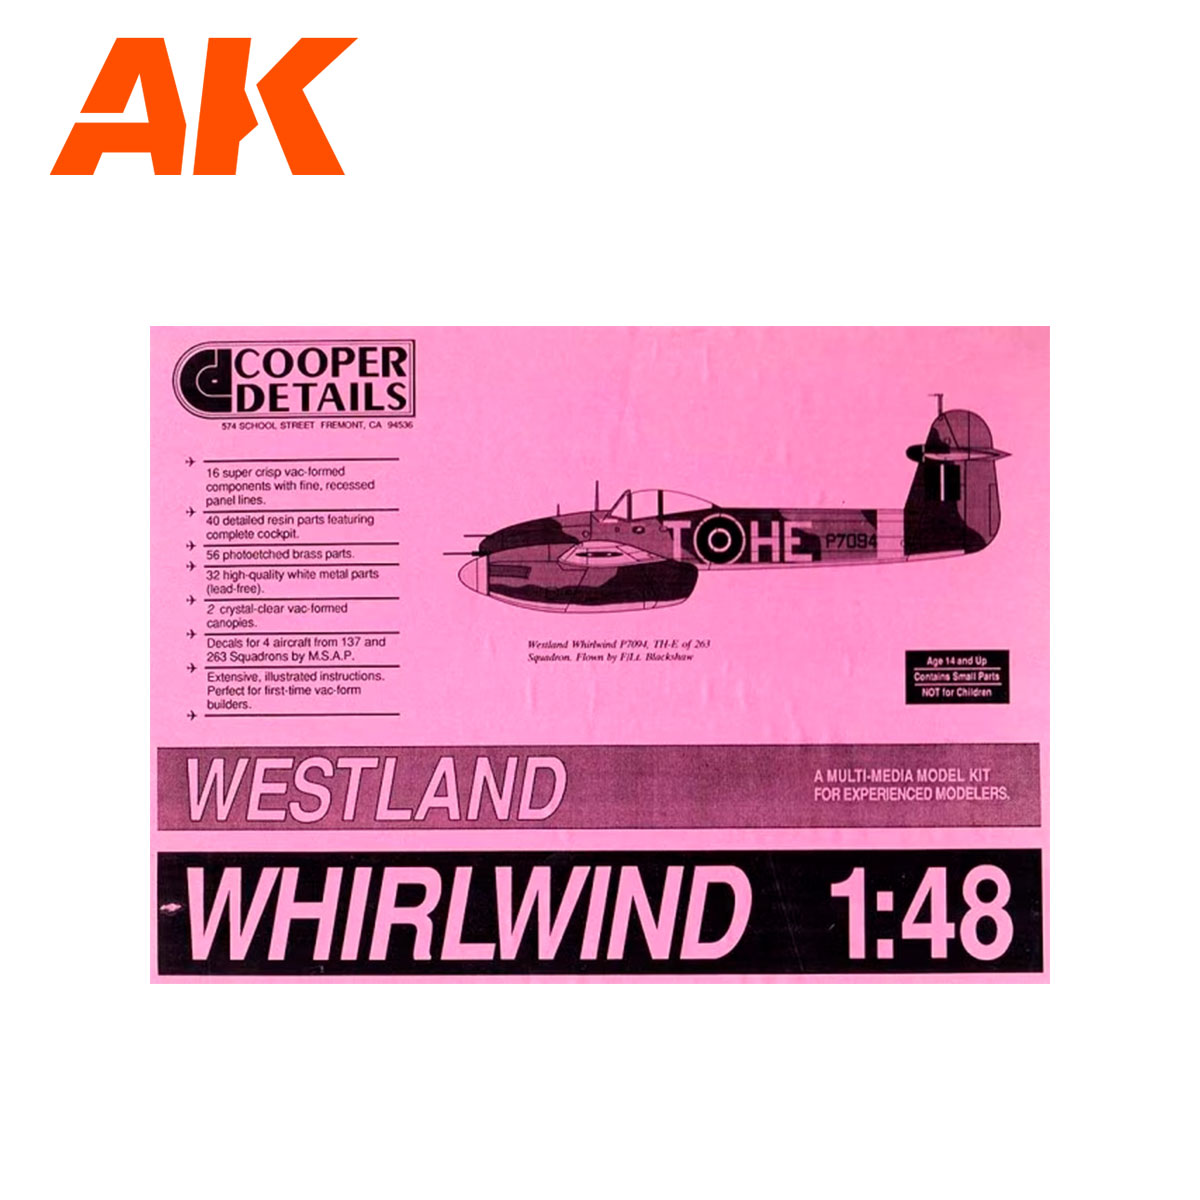 COOPER DETAILS 1/48 Westland Whirlwind